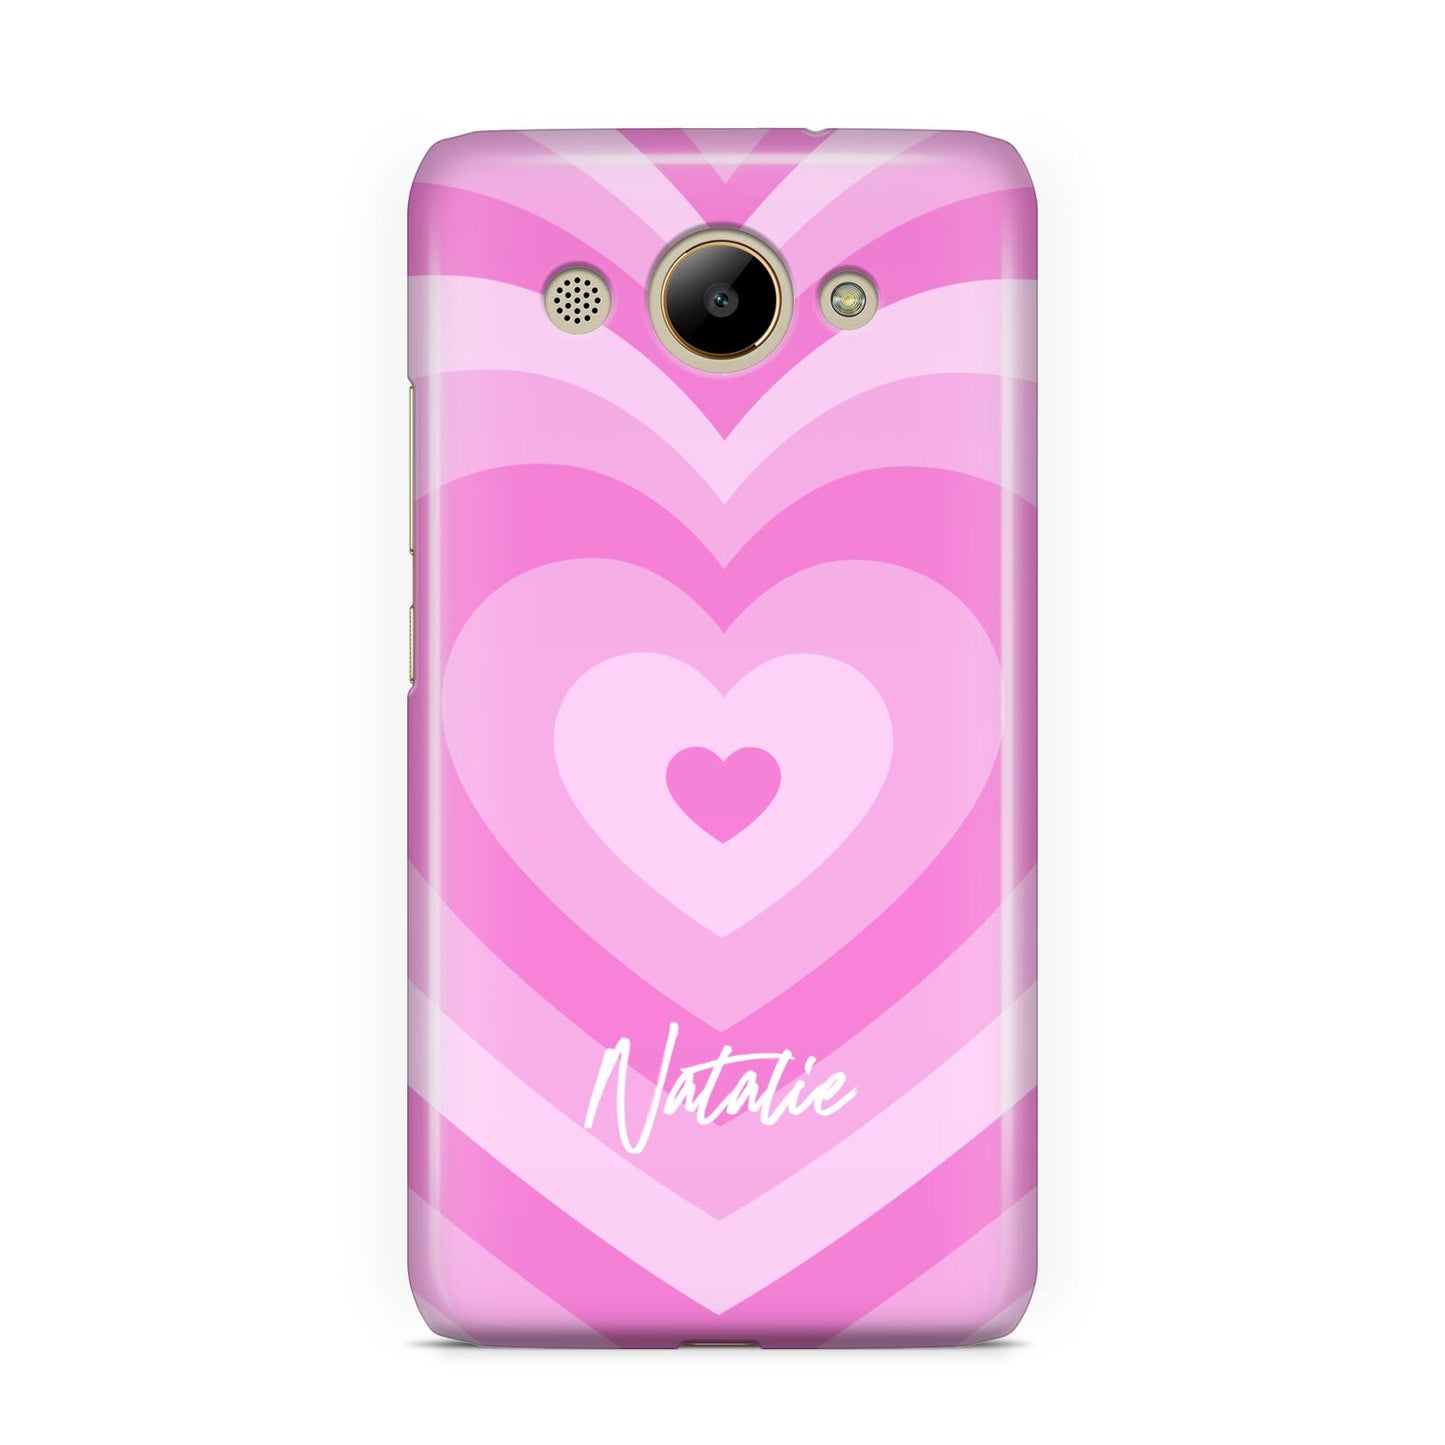 Personalised Pink Heart Huawei Y3 2017